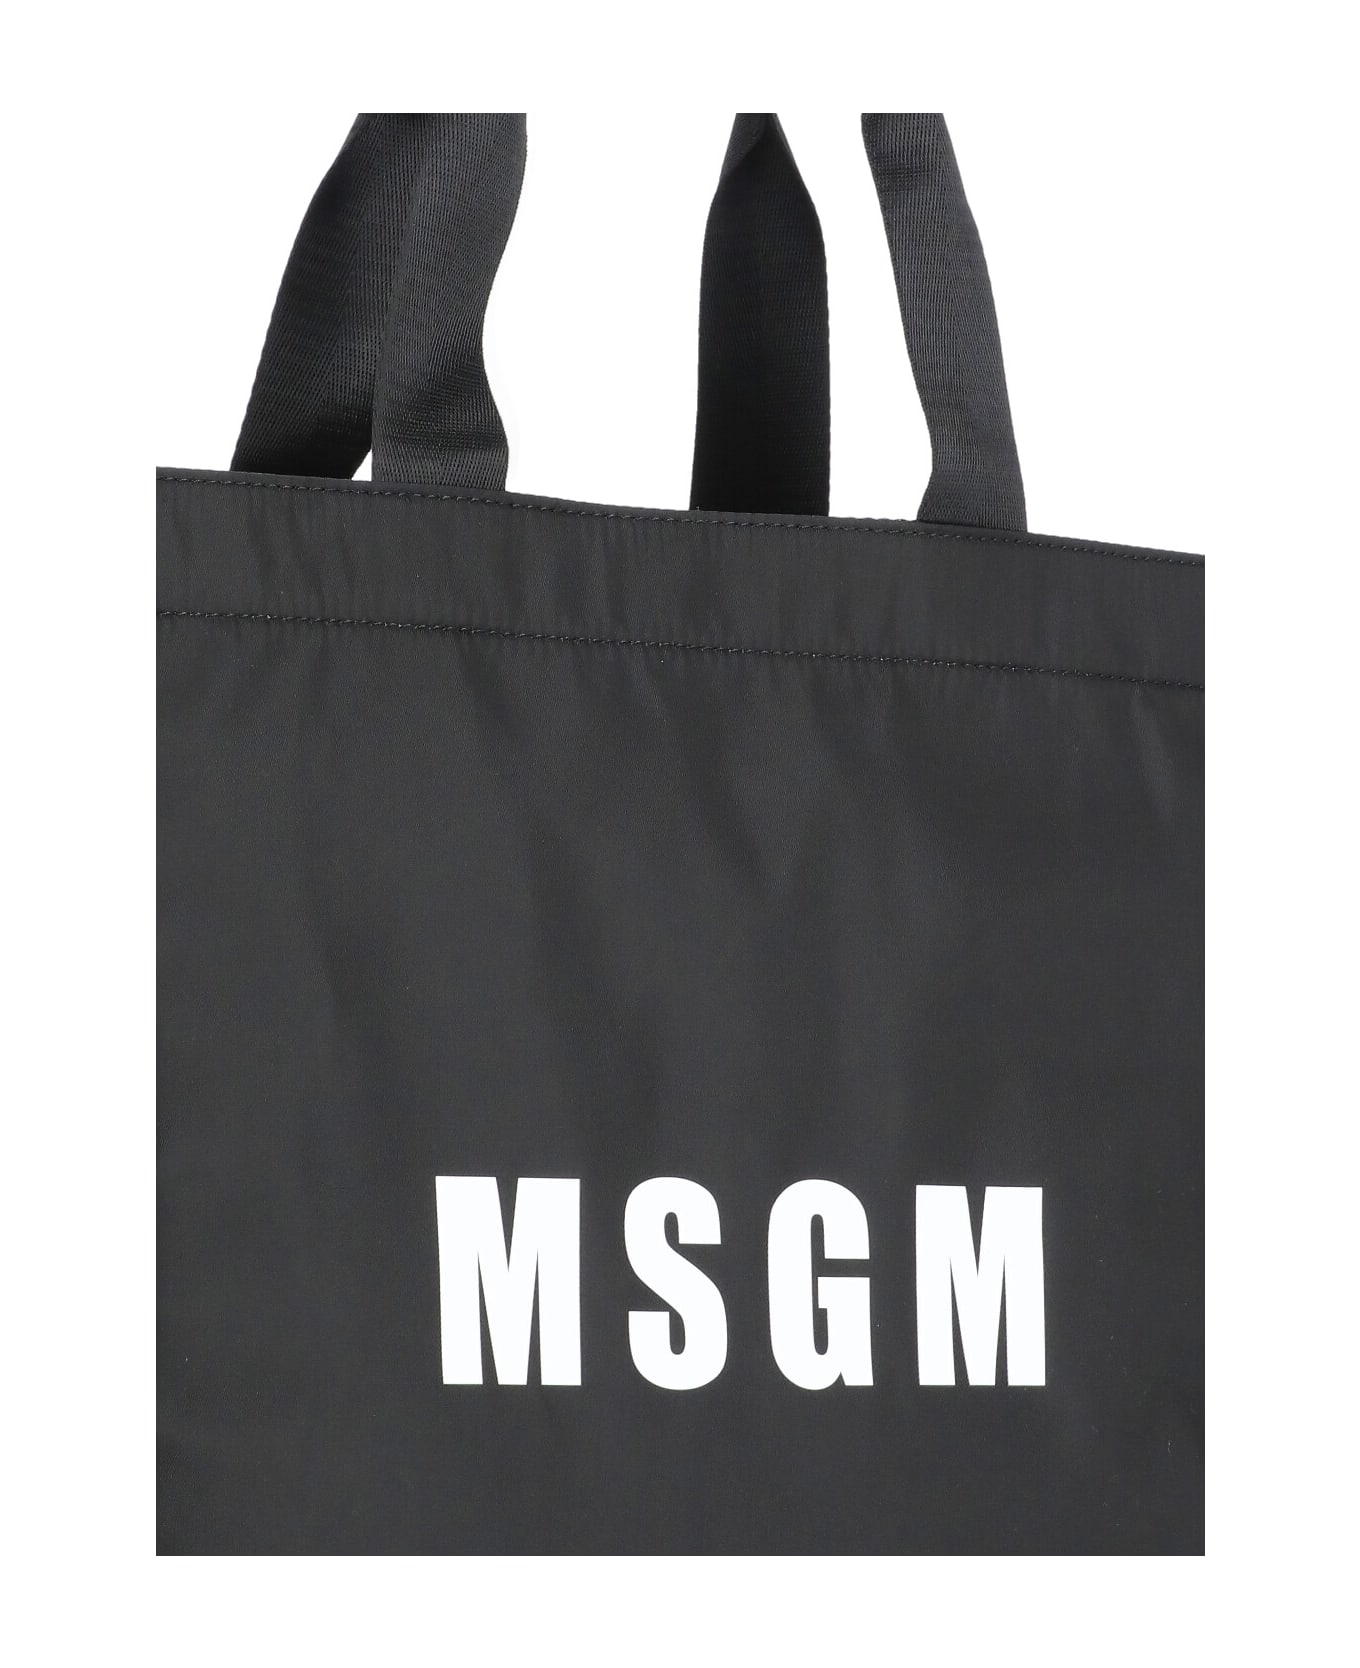 MSGM Tote Shoulder Bag - Black